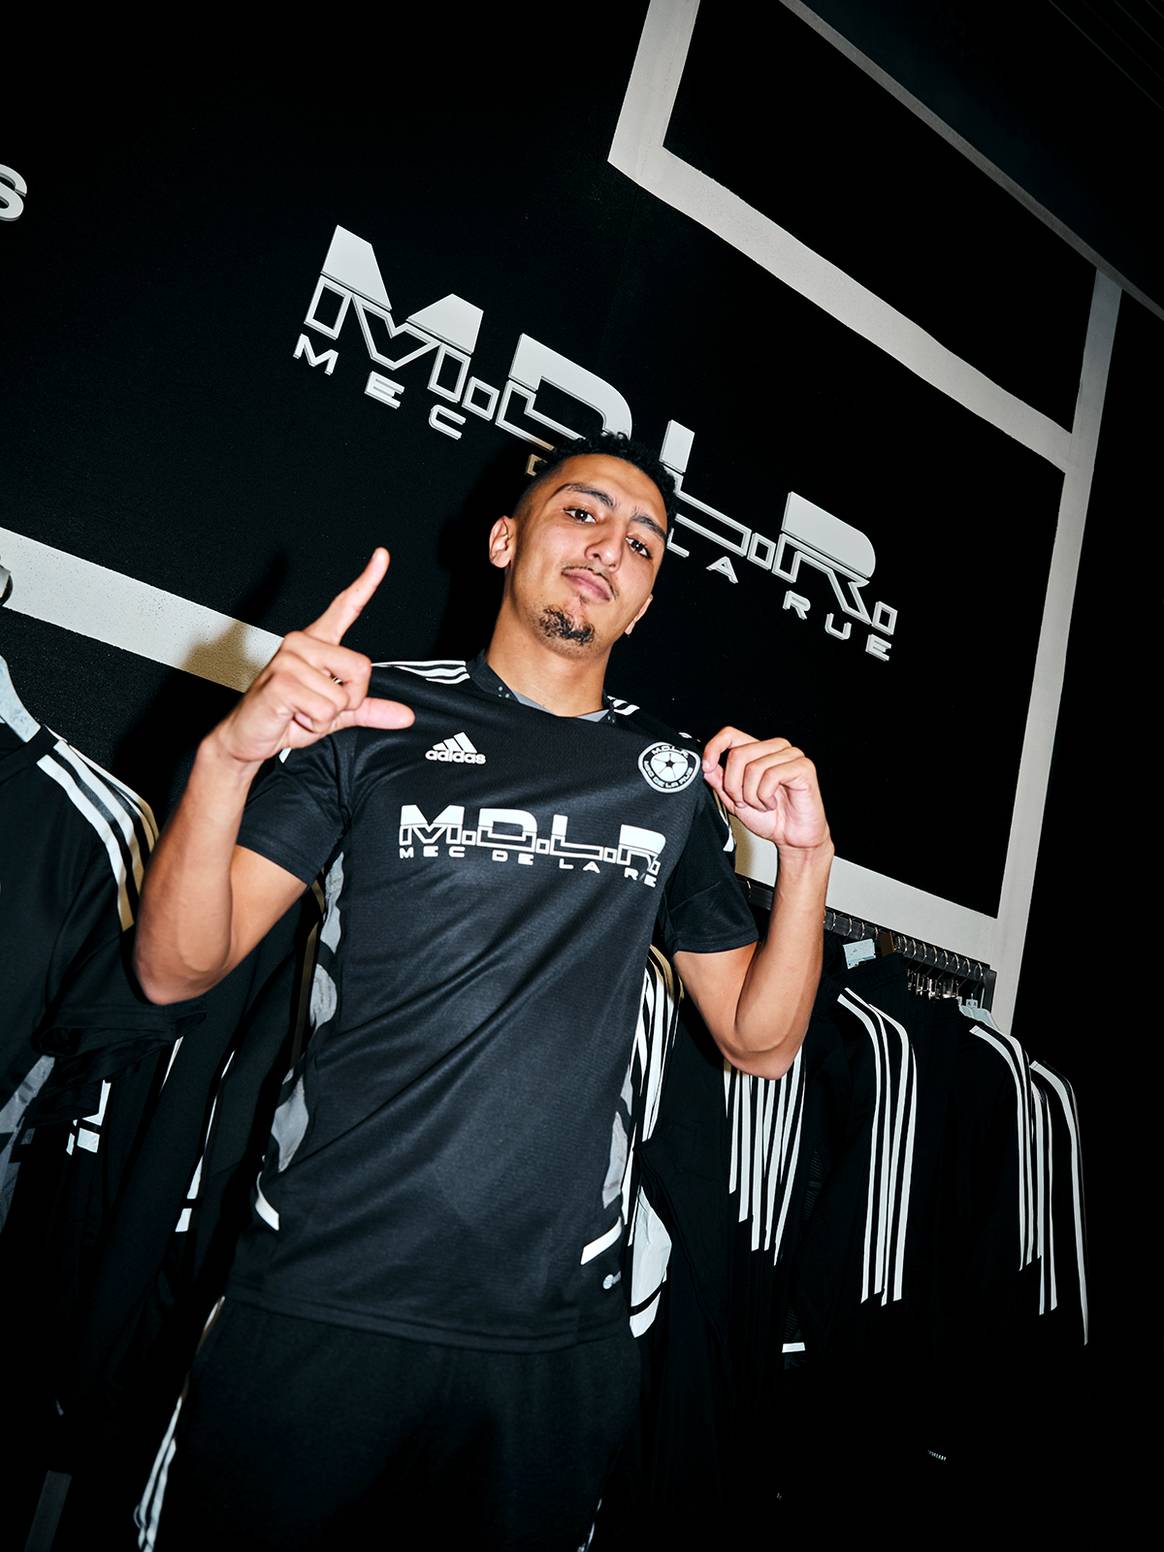 Photo Credits: El rapero Morad con su camiseta exclusiva diseñada junto a Adidas.